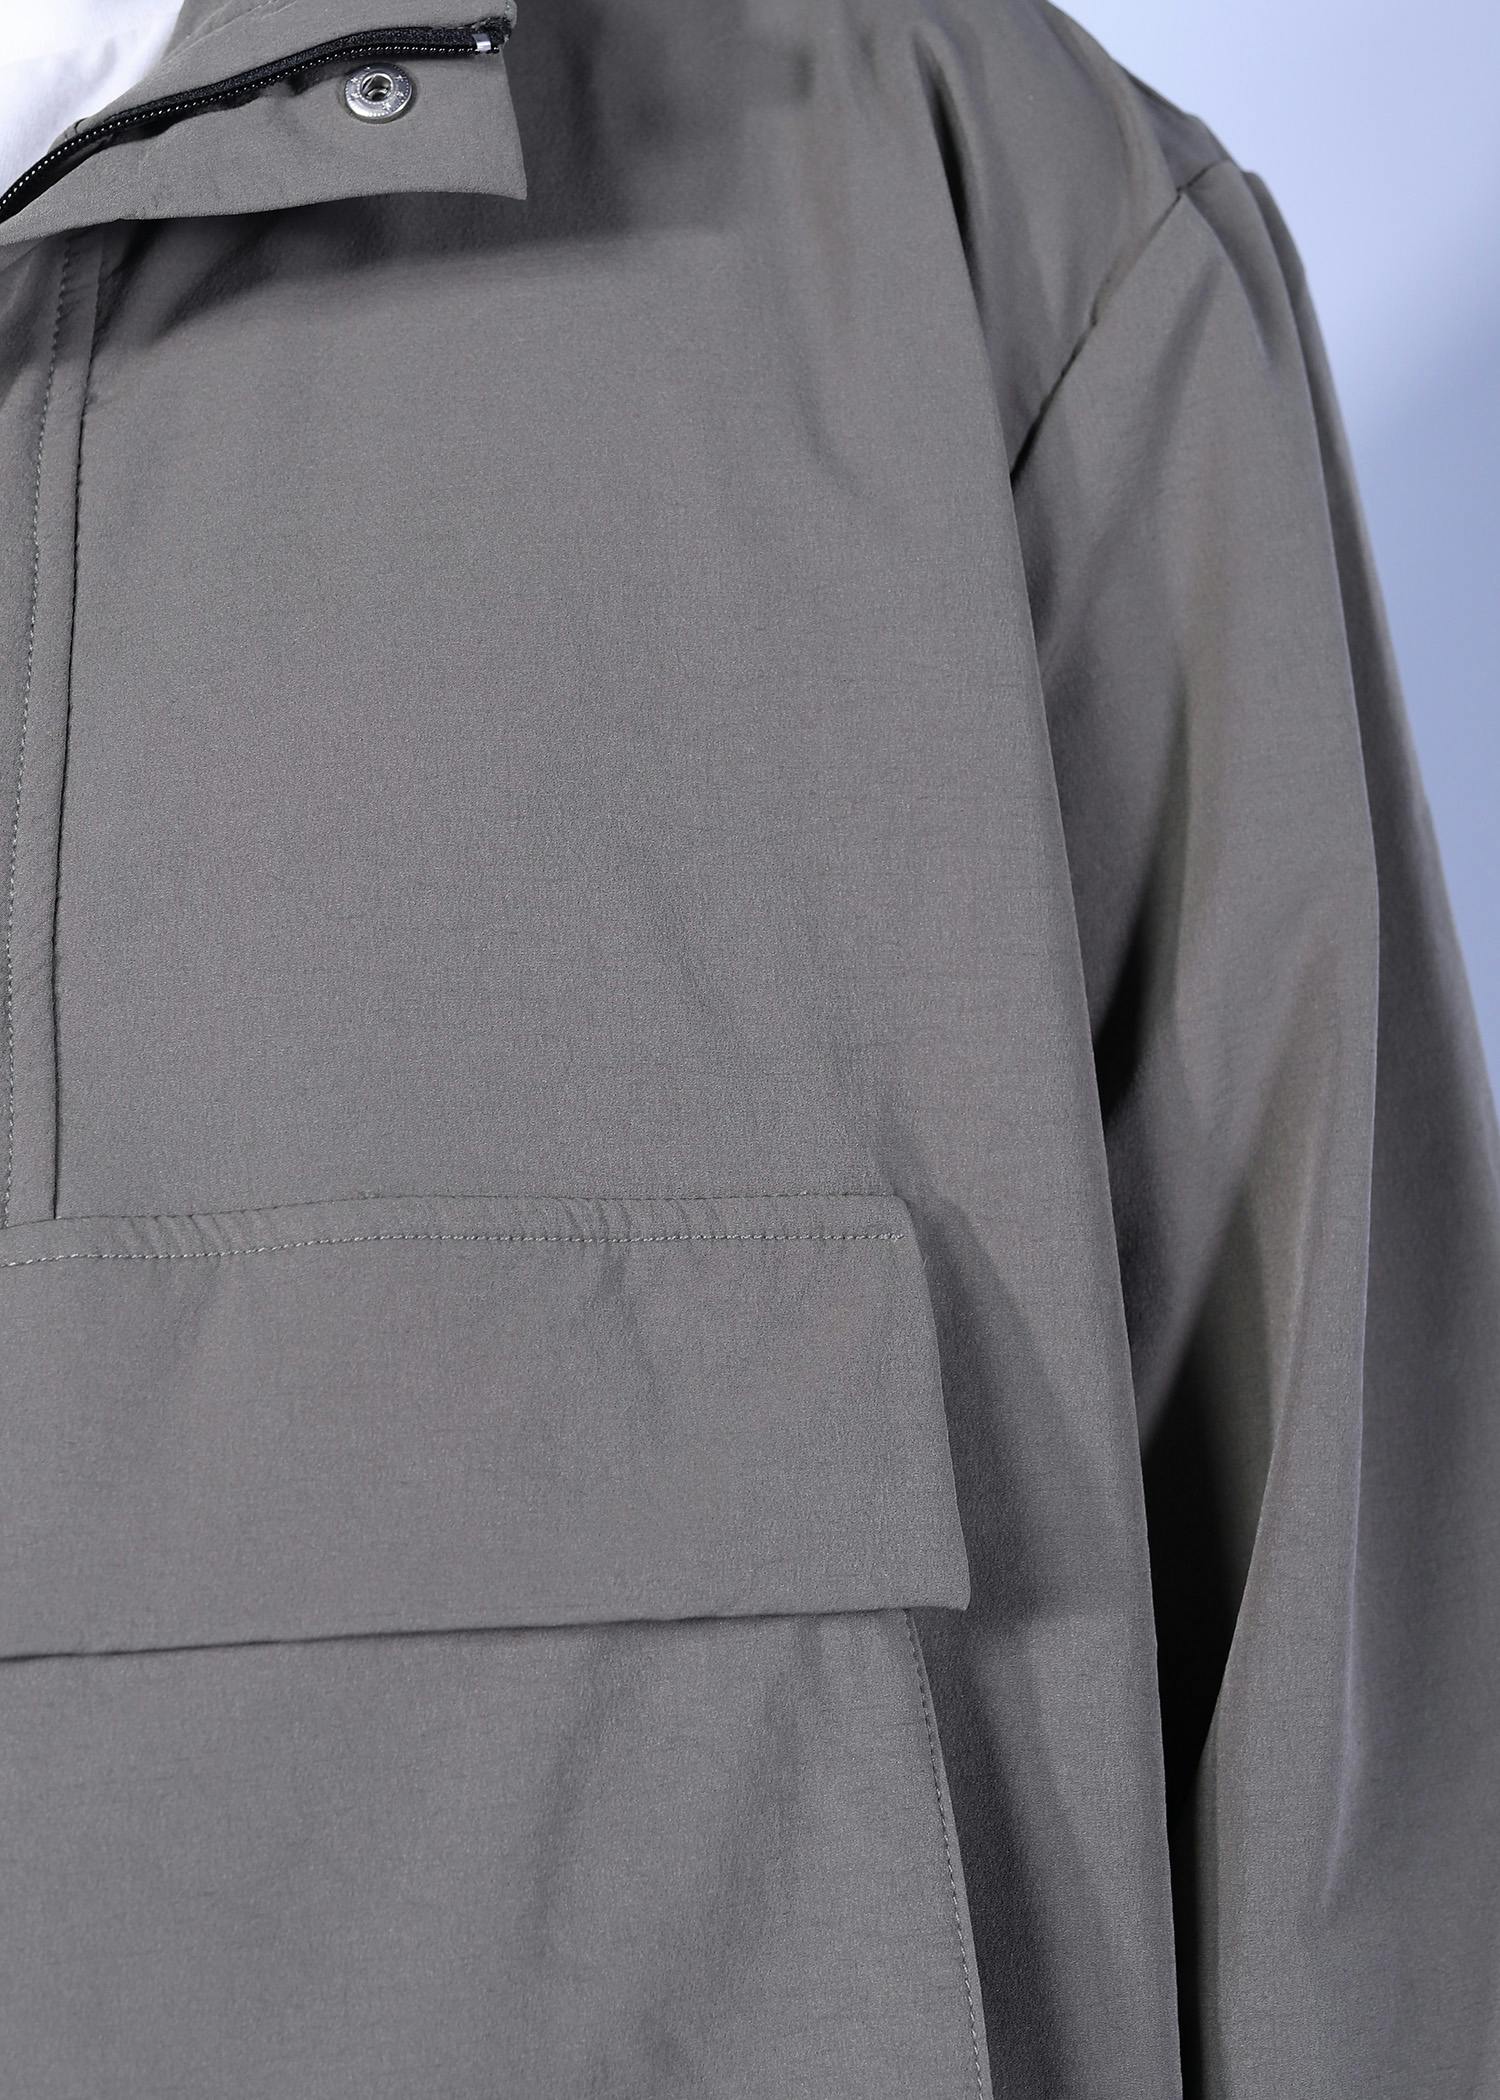 drongo jacket khaki color close front view